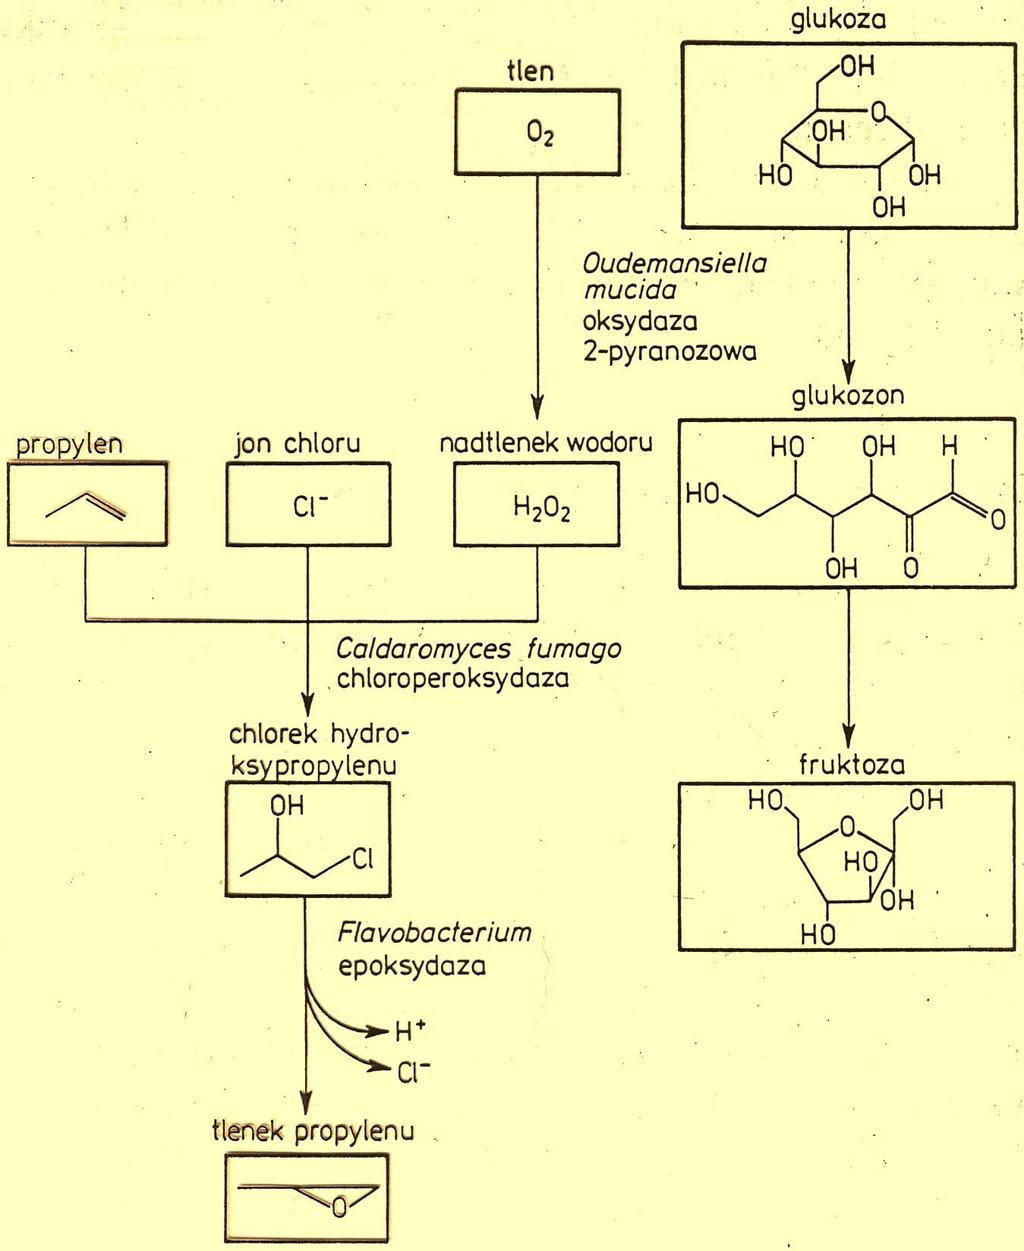 Enzymatyczna synteza tlenków